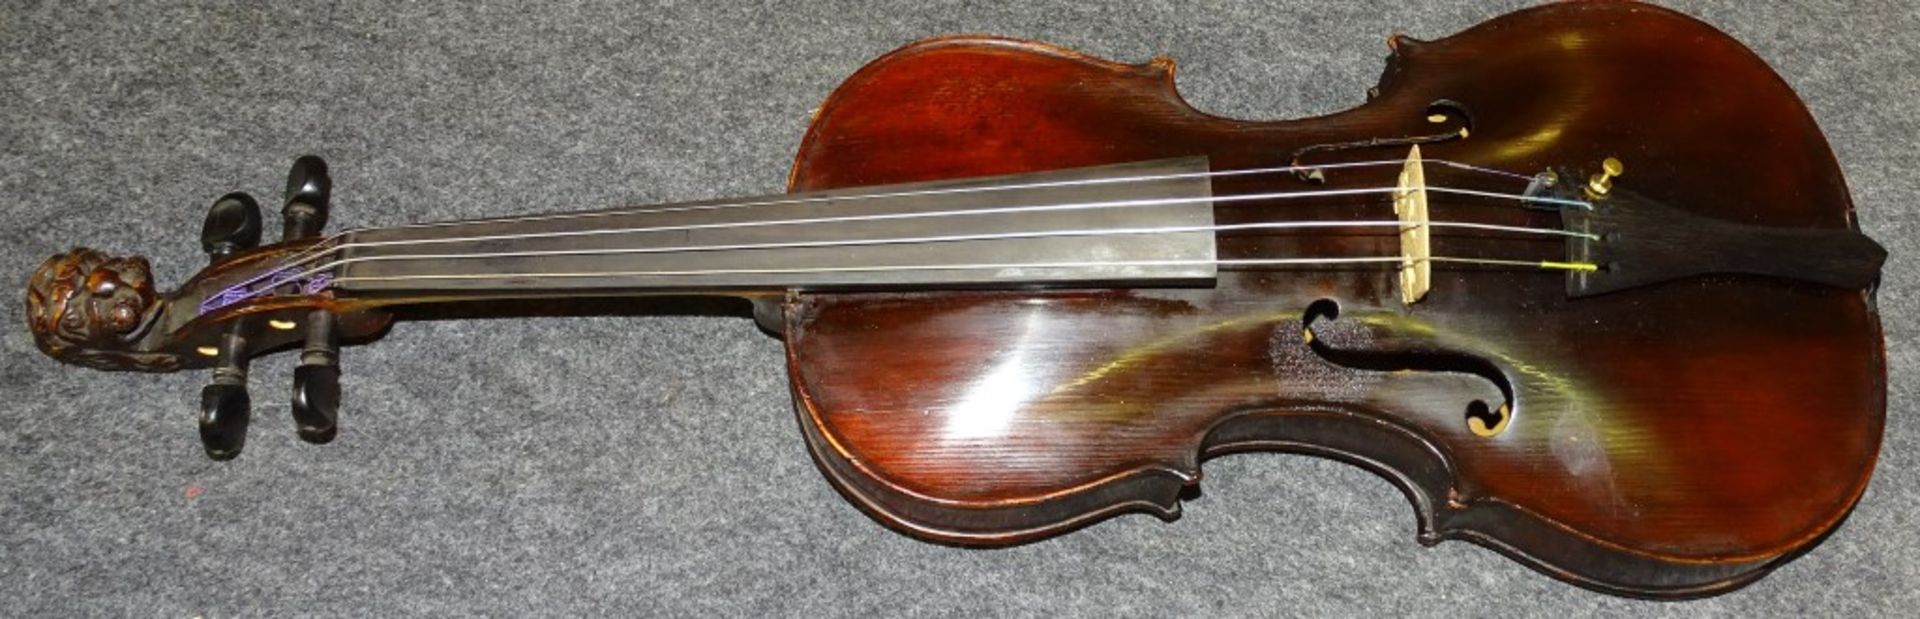 Geige- Hornsteiner Mittenwald 1882,Etikett in Geigen Korpus,sog.Löwenkopf Geige,anbei 2 Bögen,1x - Bild 5 aus 10